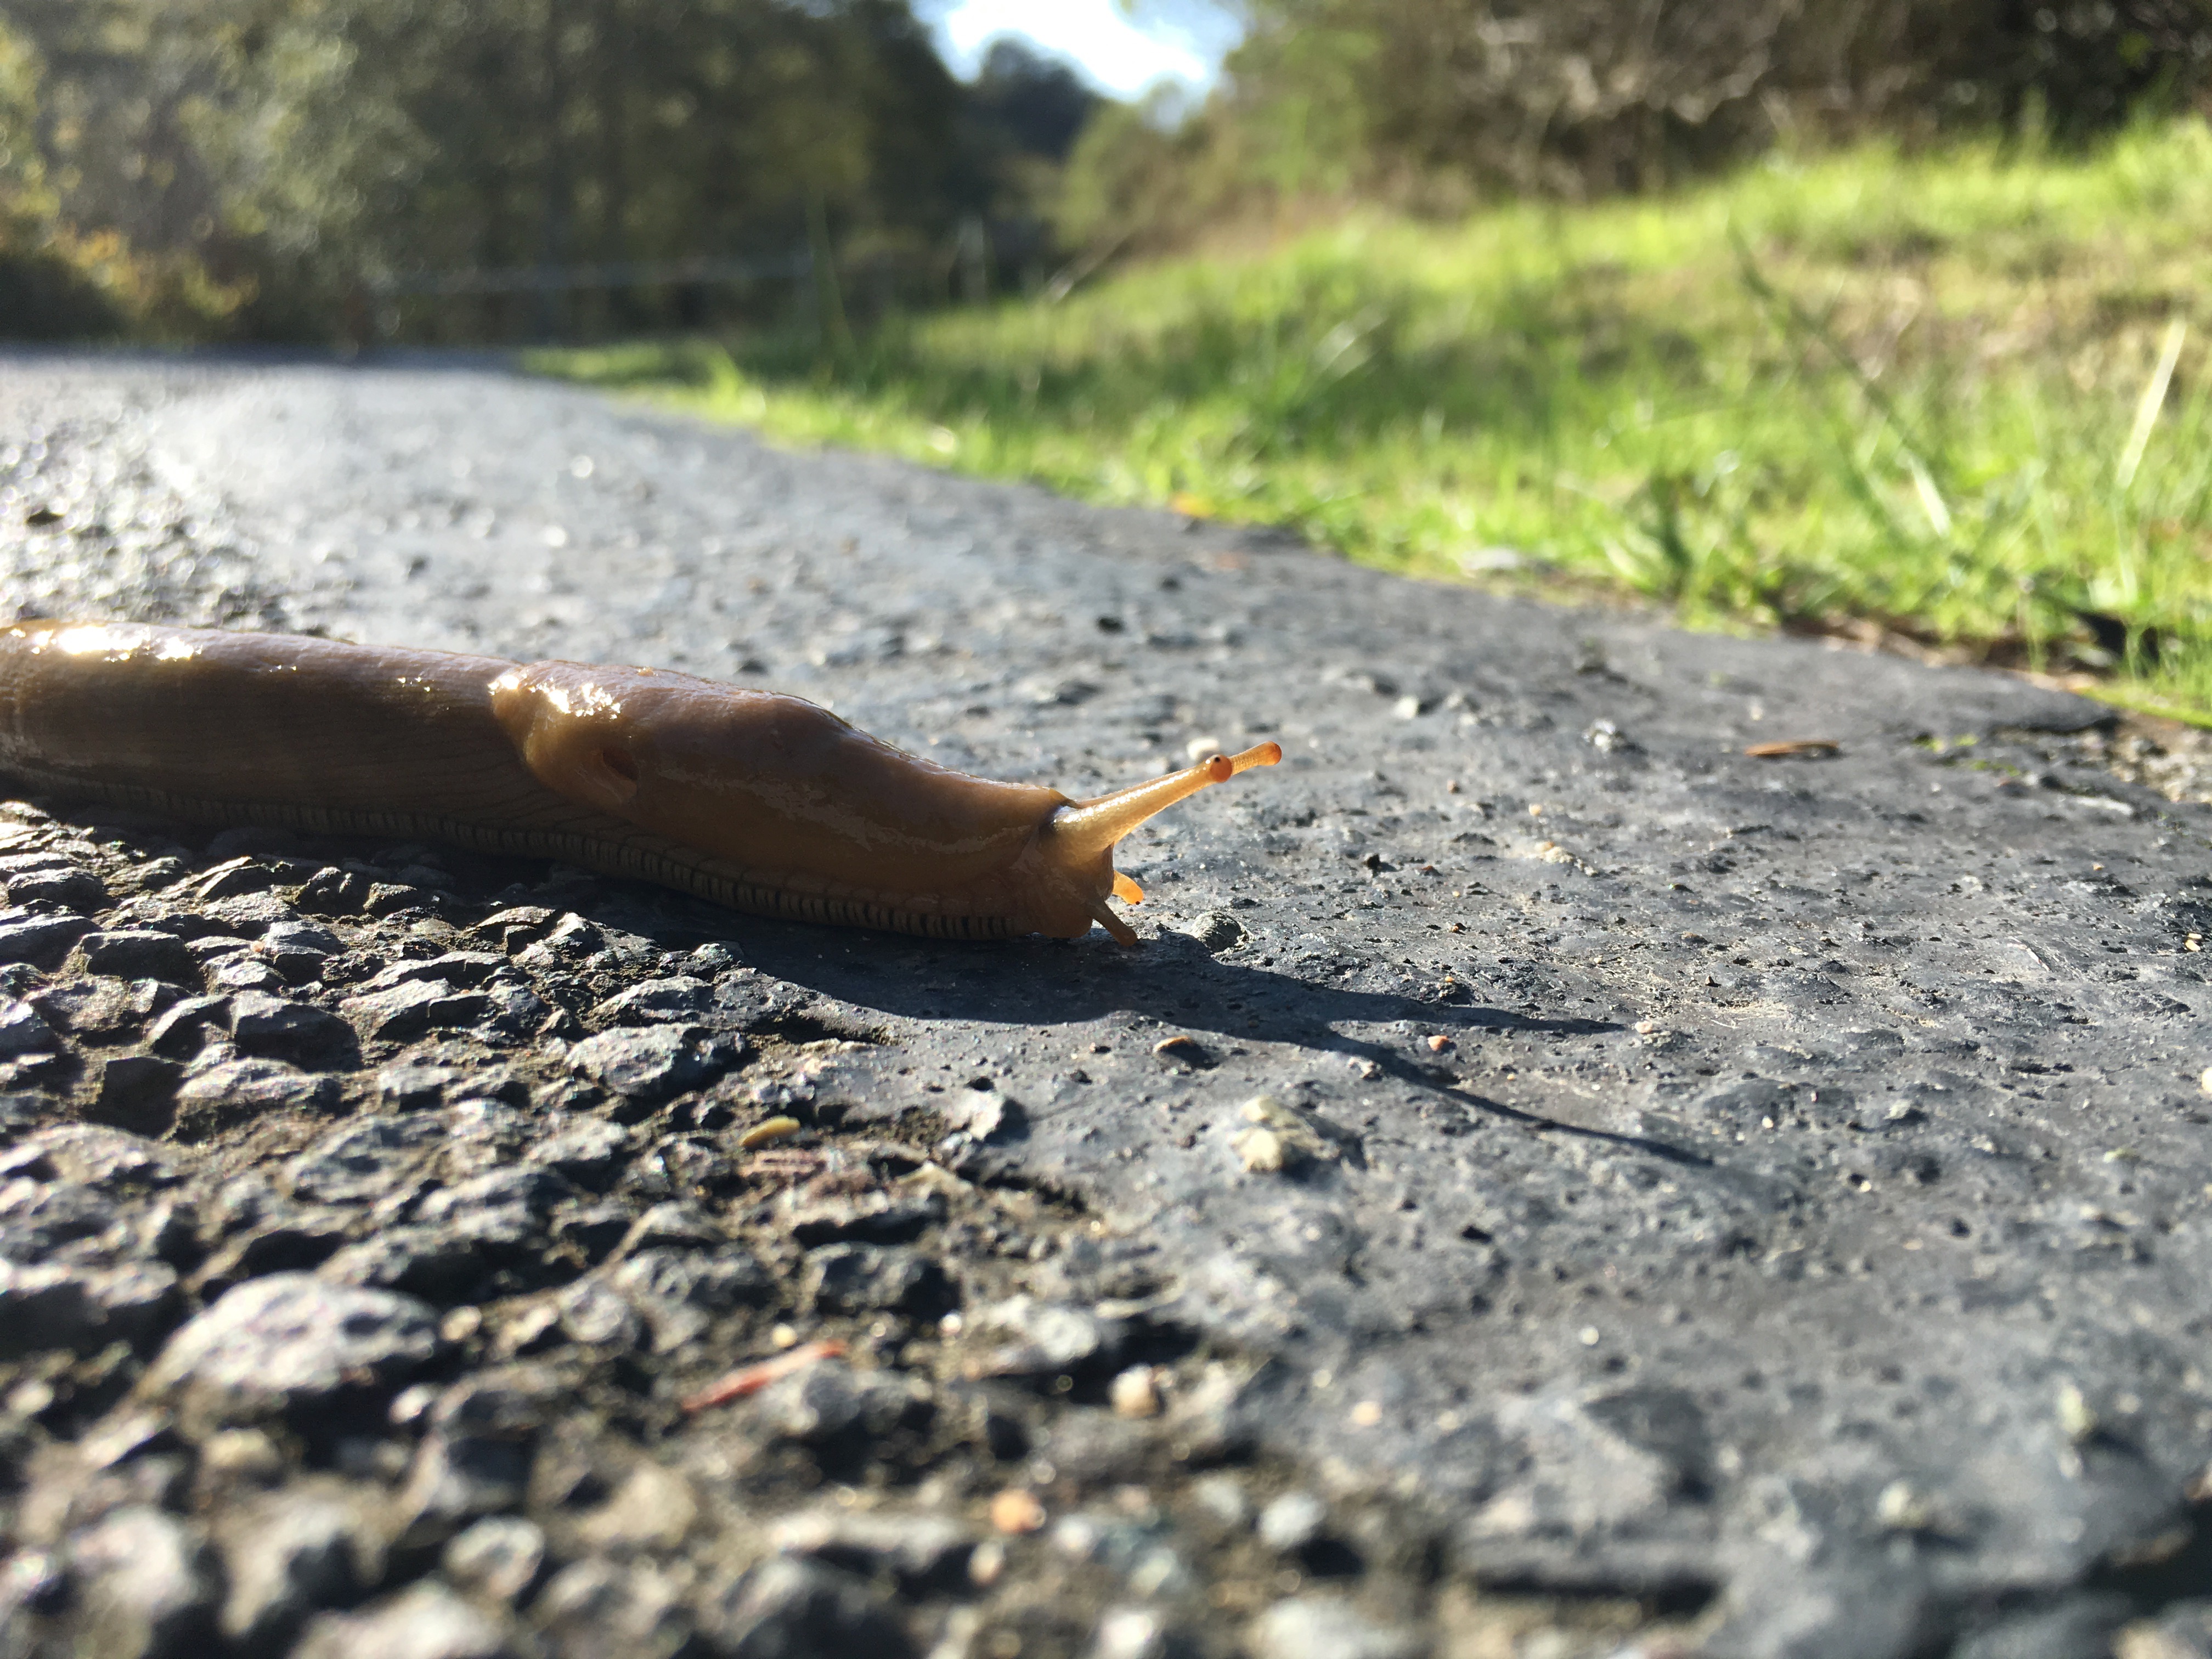 Banana slug (not a nematode)